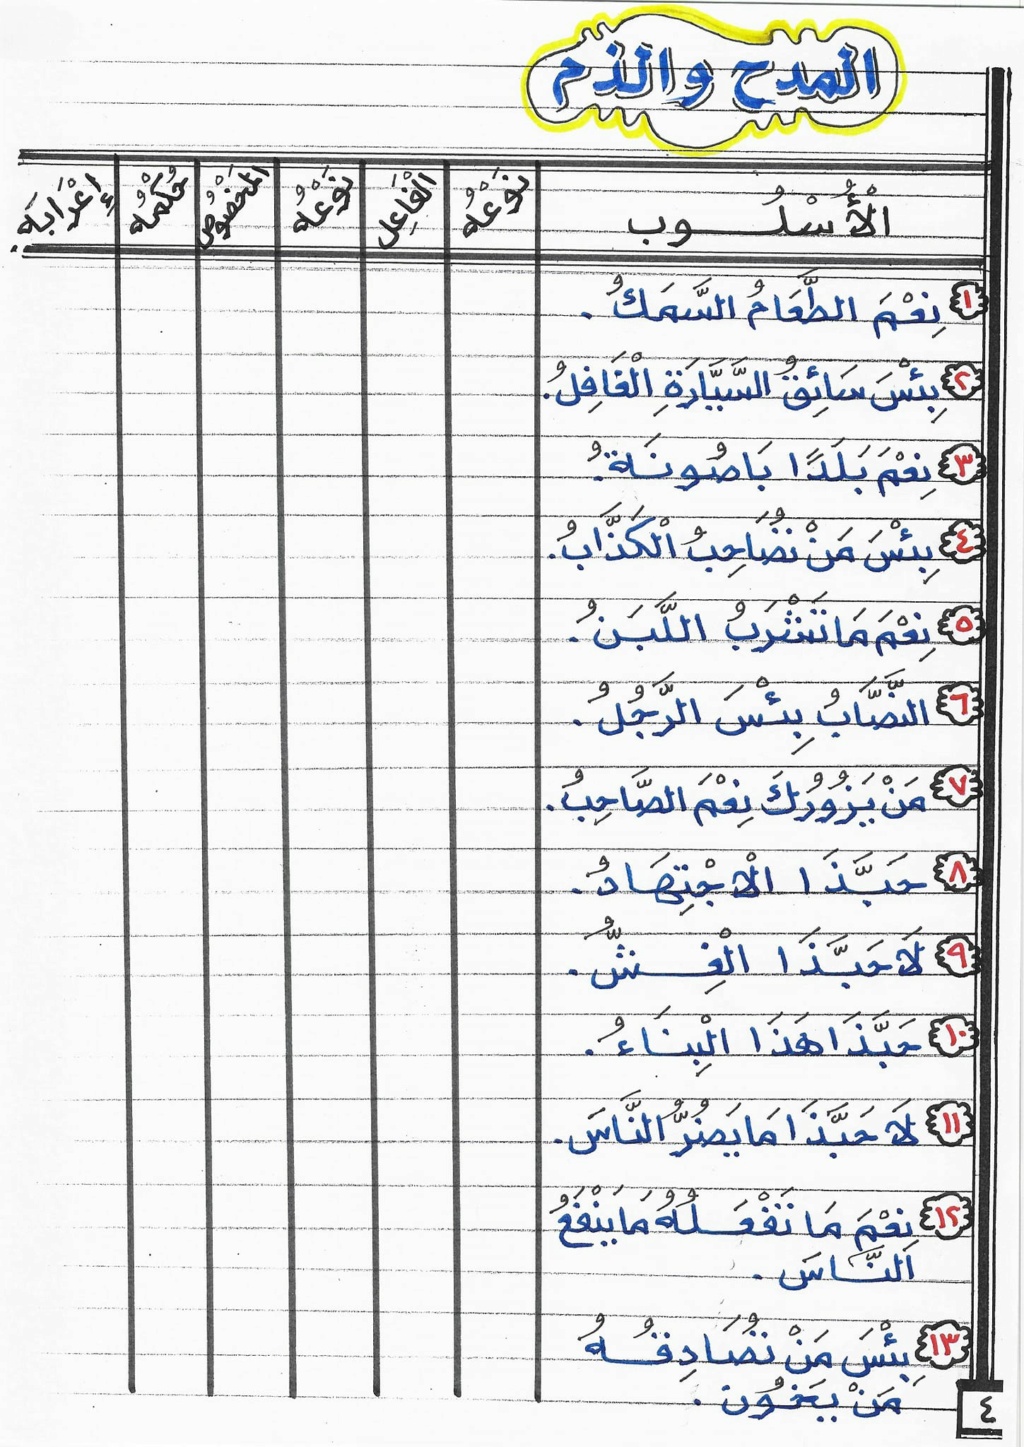 بوكليت مراجعة نحو تالتة إعدادي ترم أول أستاذ الحسيني عبدالمجيد 4281